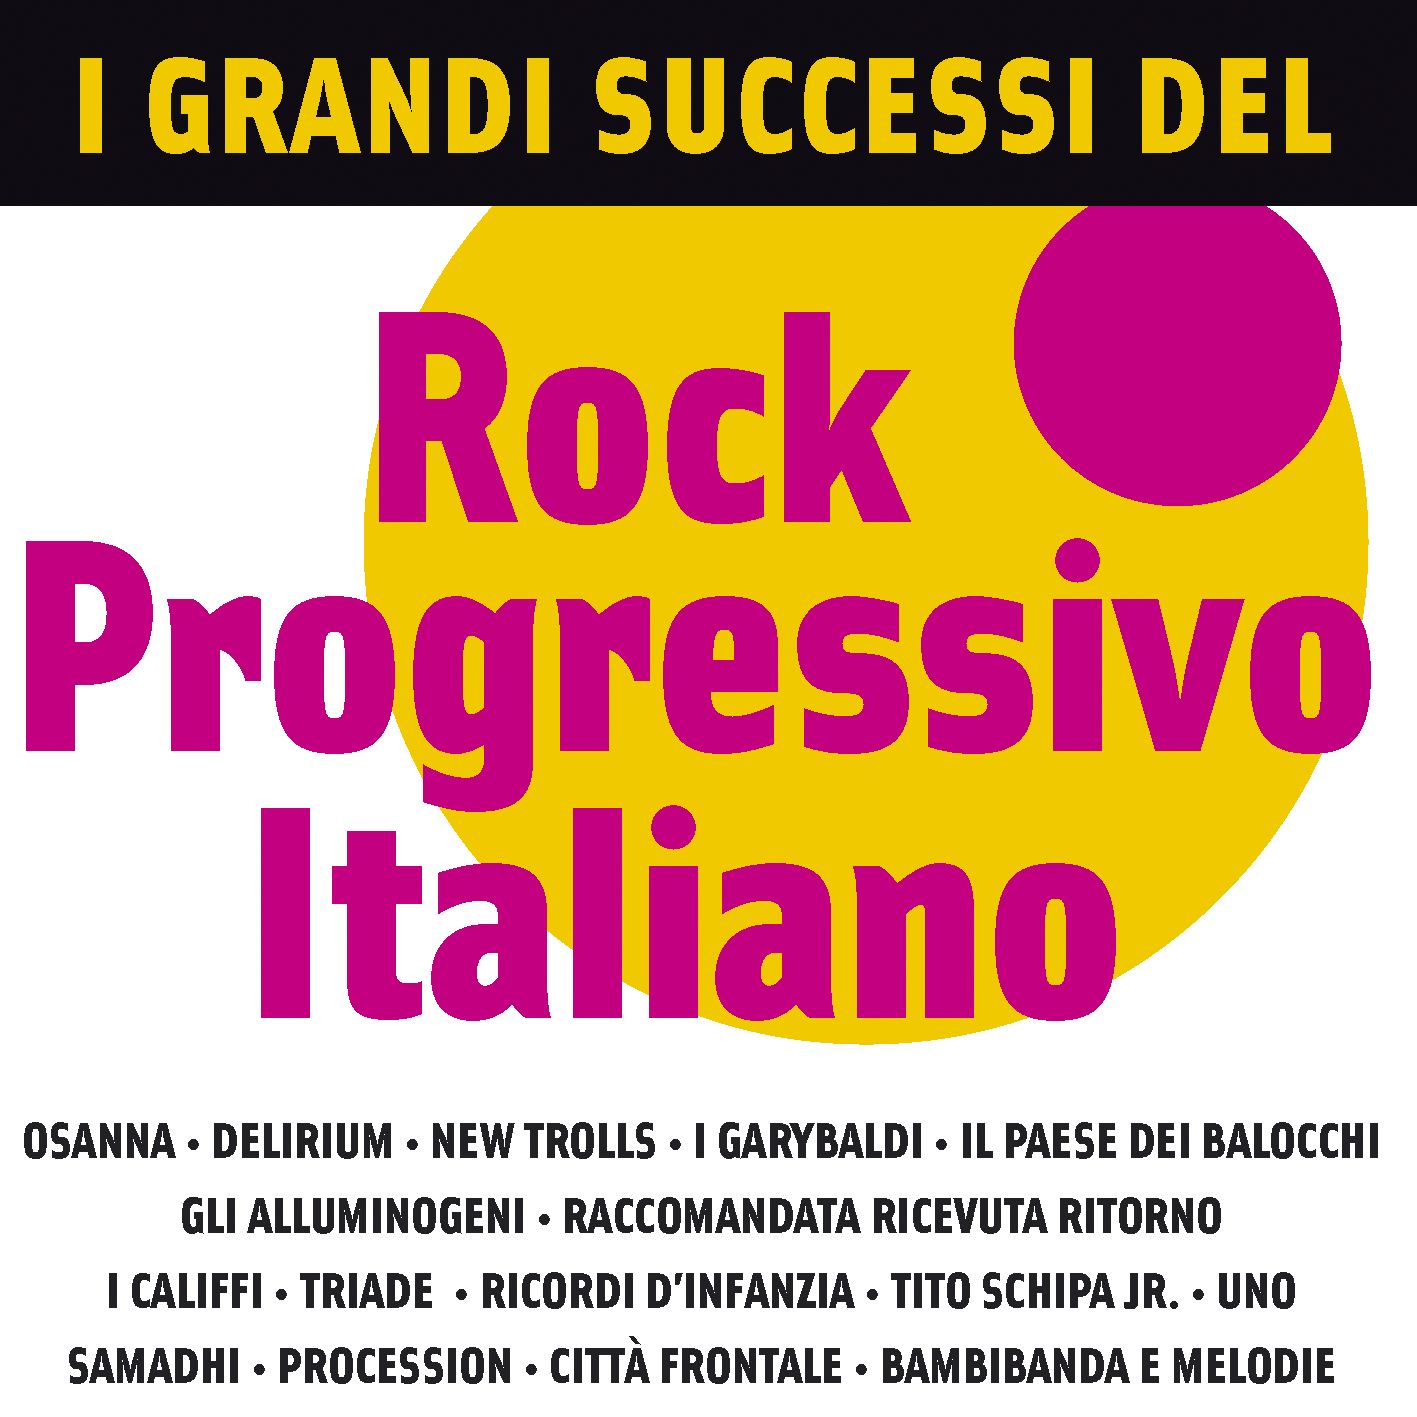 I Grandi Successi del Rock Progressivo Italiano